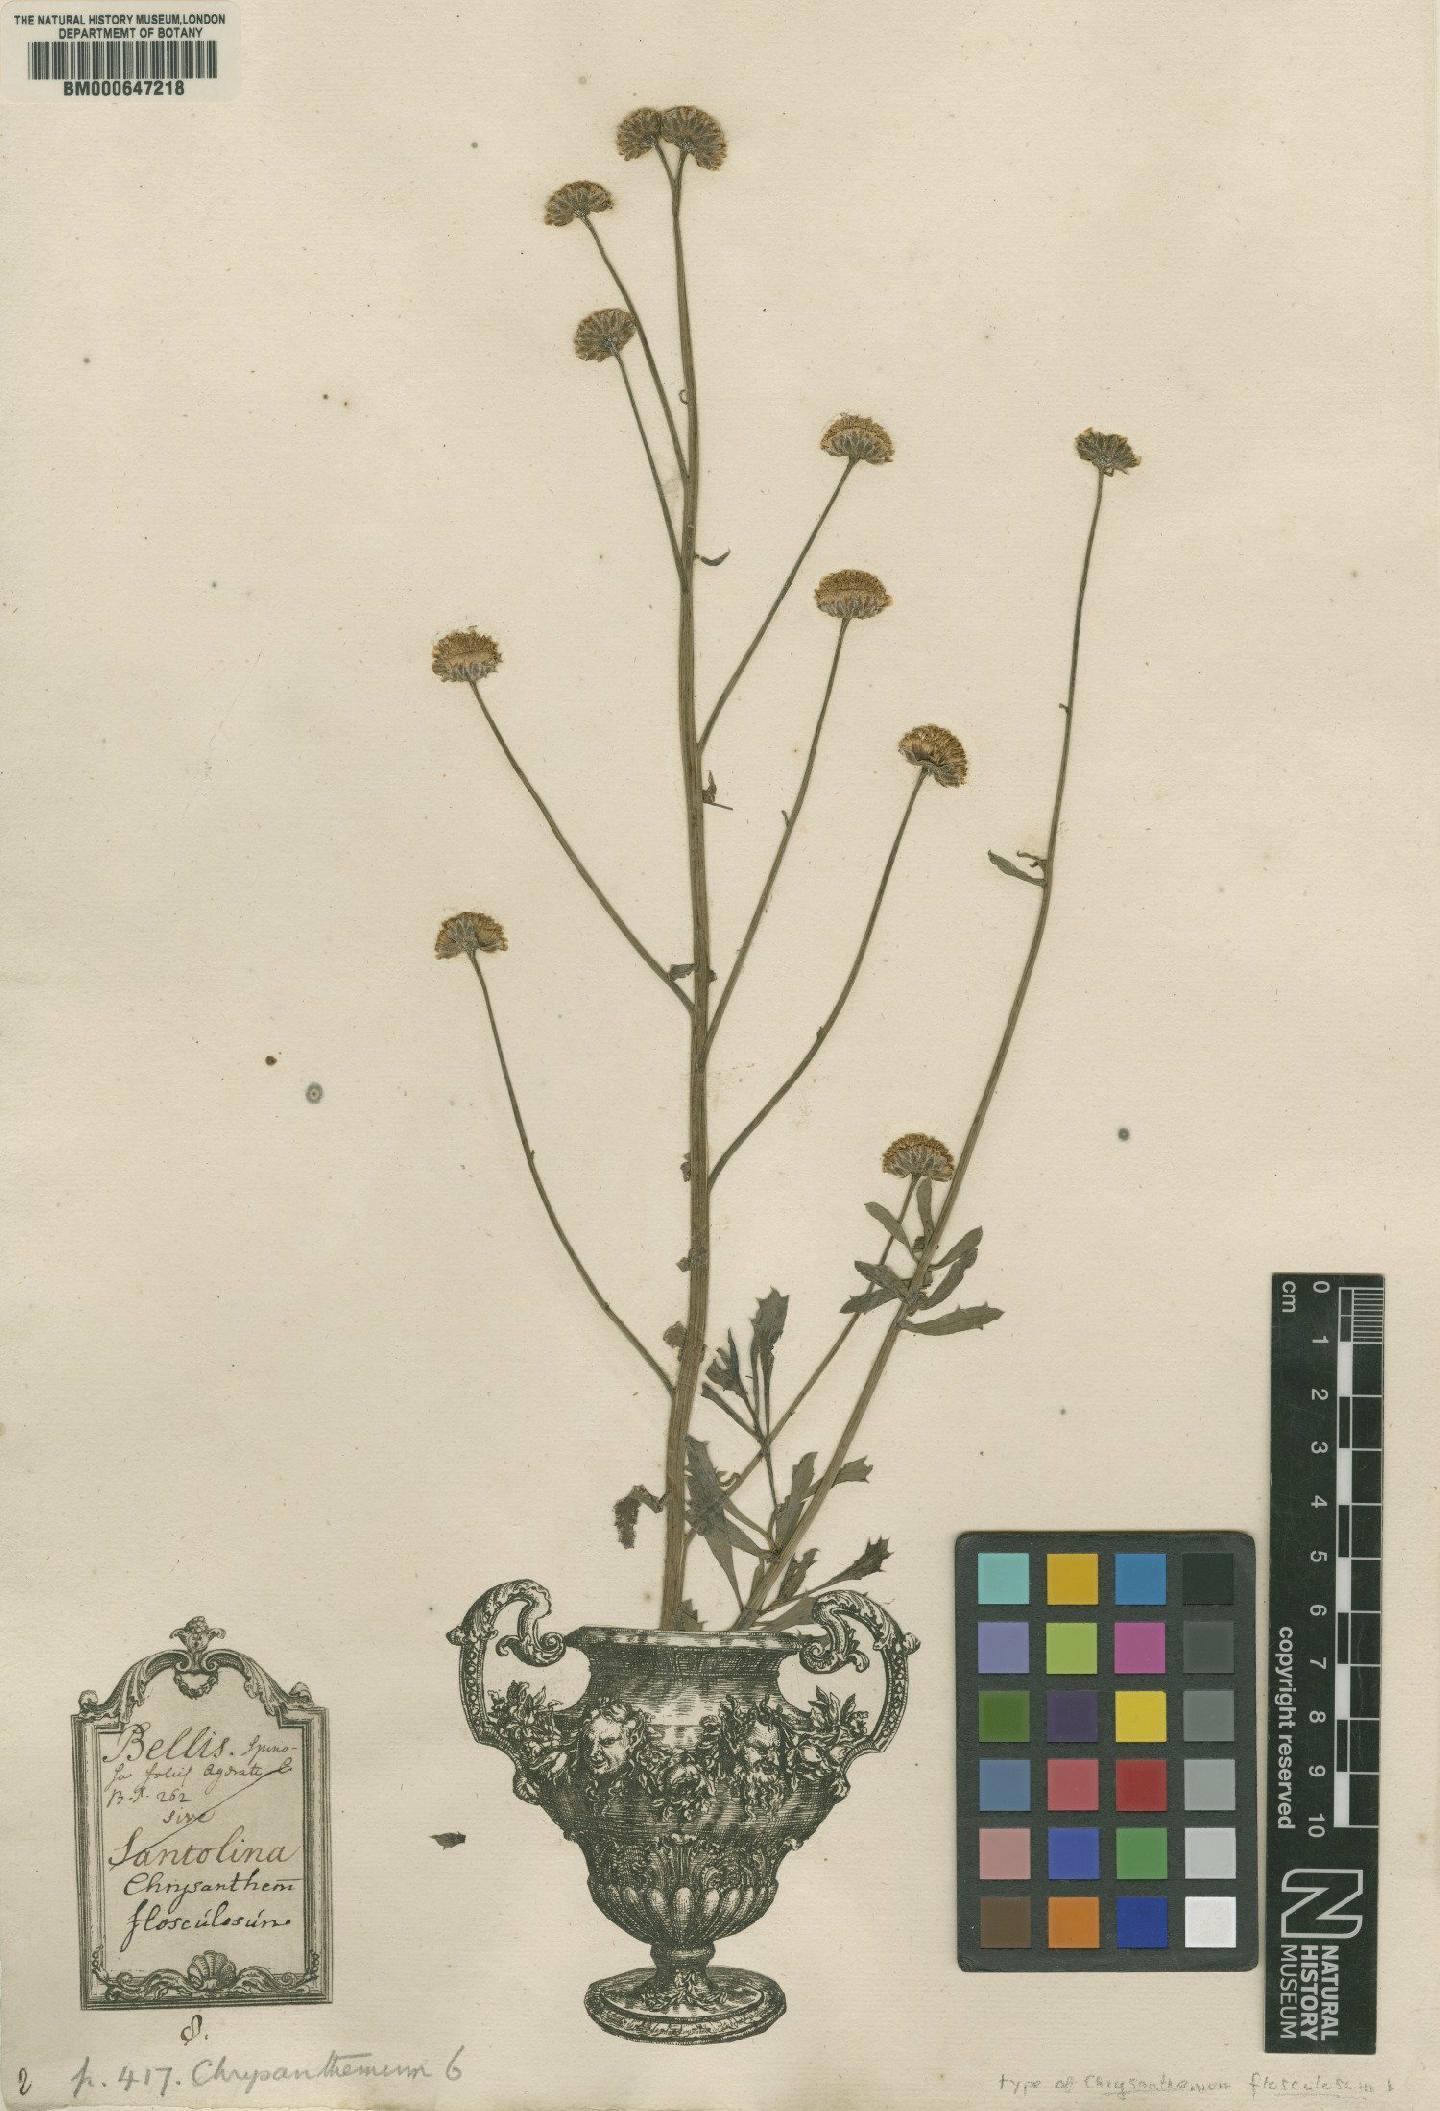 To NHMUK collection (Chrysanthemum flosculosum L.; Lectotype; NHMUK:ecatalogue:4704031)